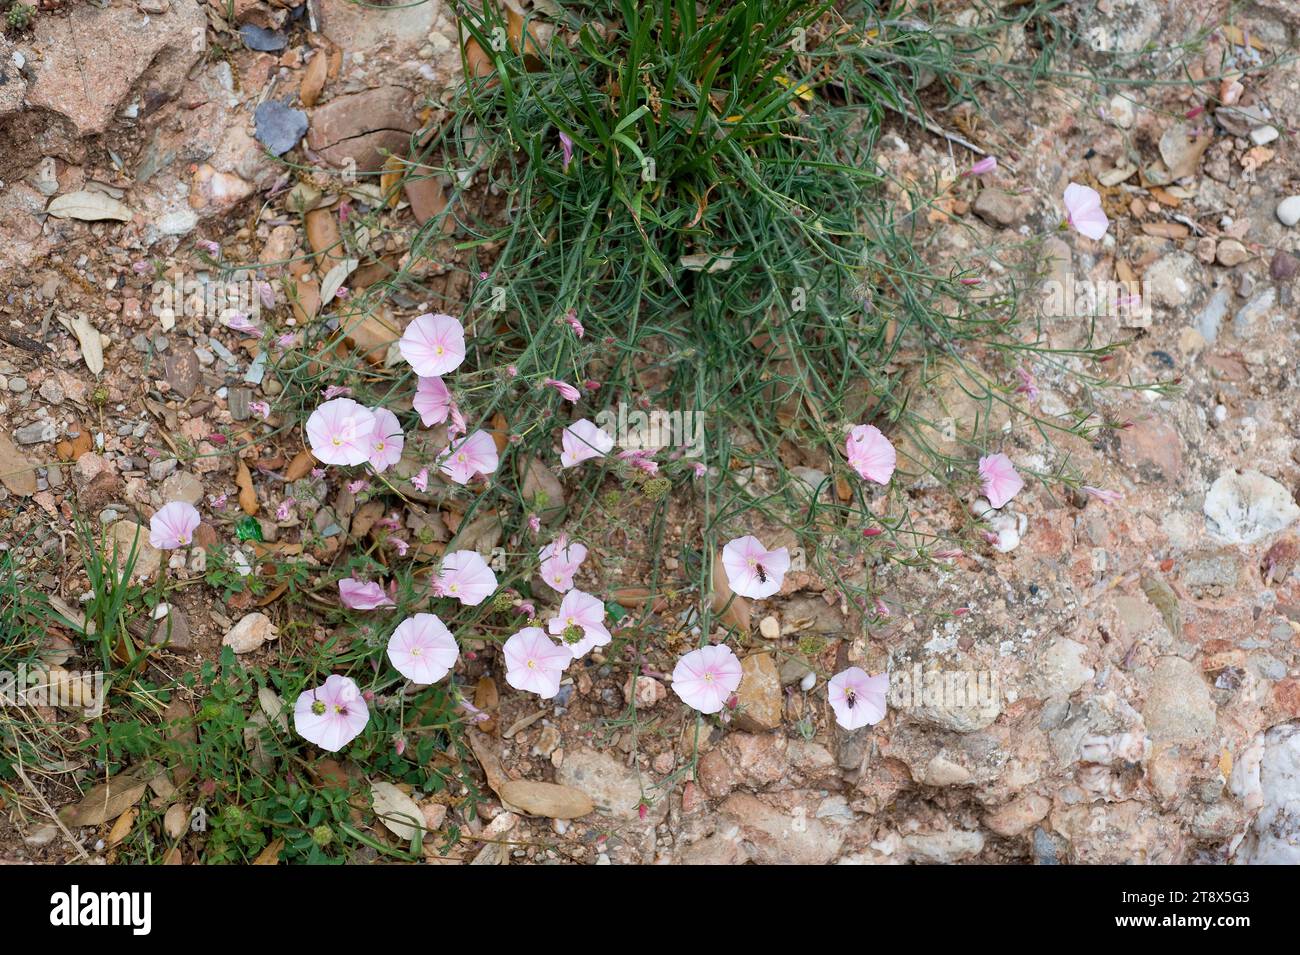 Campanilla espigada (Convolvulus lineatus) ist ein ausdauerndes Kraut aus dem Mittelmeerbecken. Dieses Foto wurde im Montserrat Mountain, Barcelona p Stockfoto